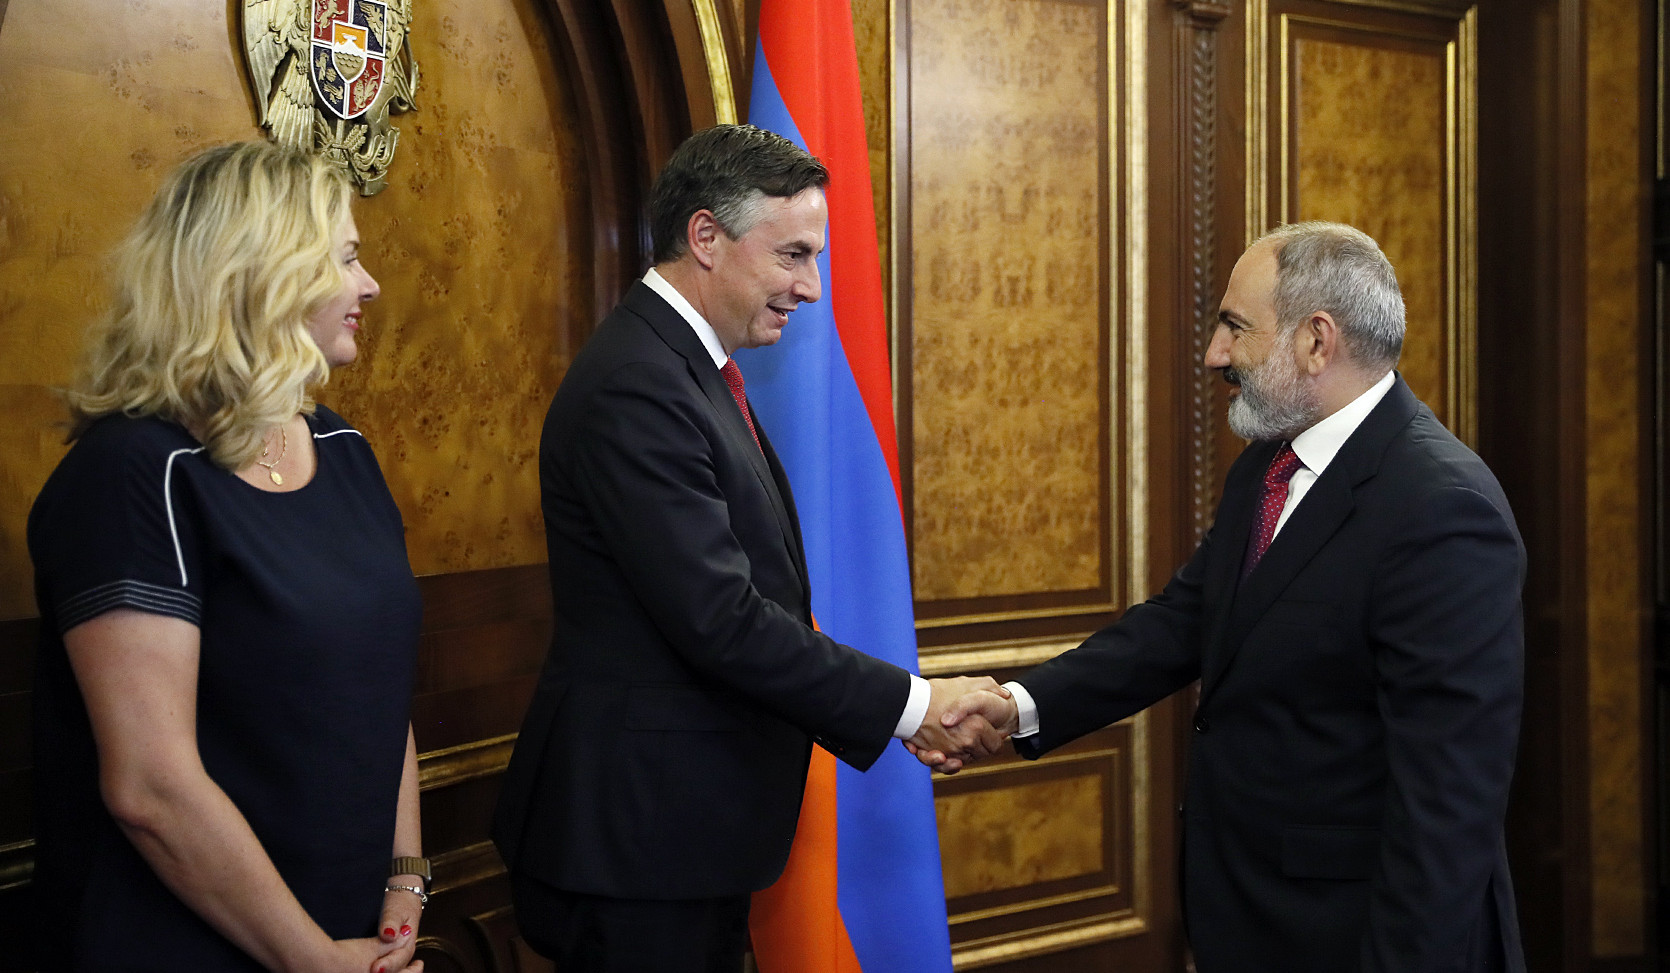 Եվրոպական միությունը հանդիսանում է Հայաստանի ժողովրդավարական օրակարգի արդյունավետ իրականացման կարևորագույն գործընկերներից մեկը. Նիկոլ Փաշինյան